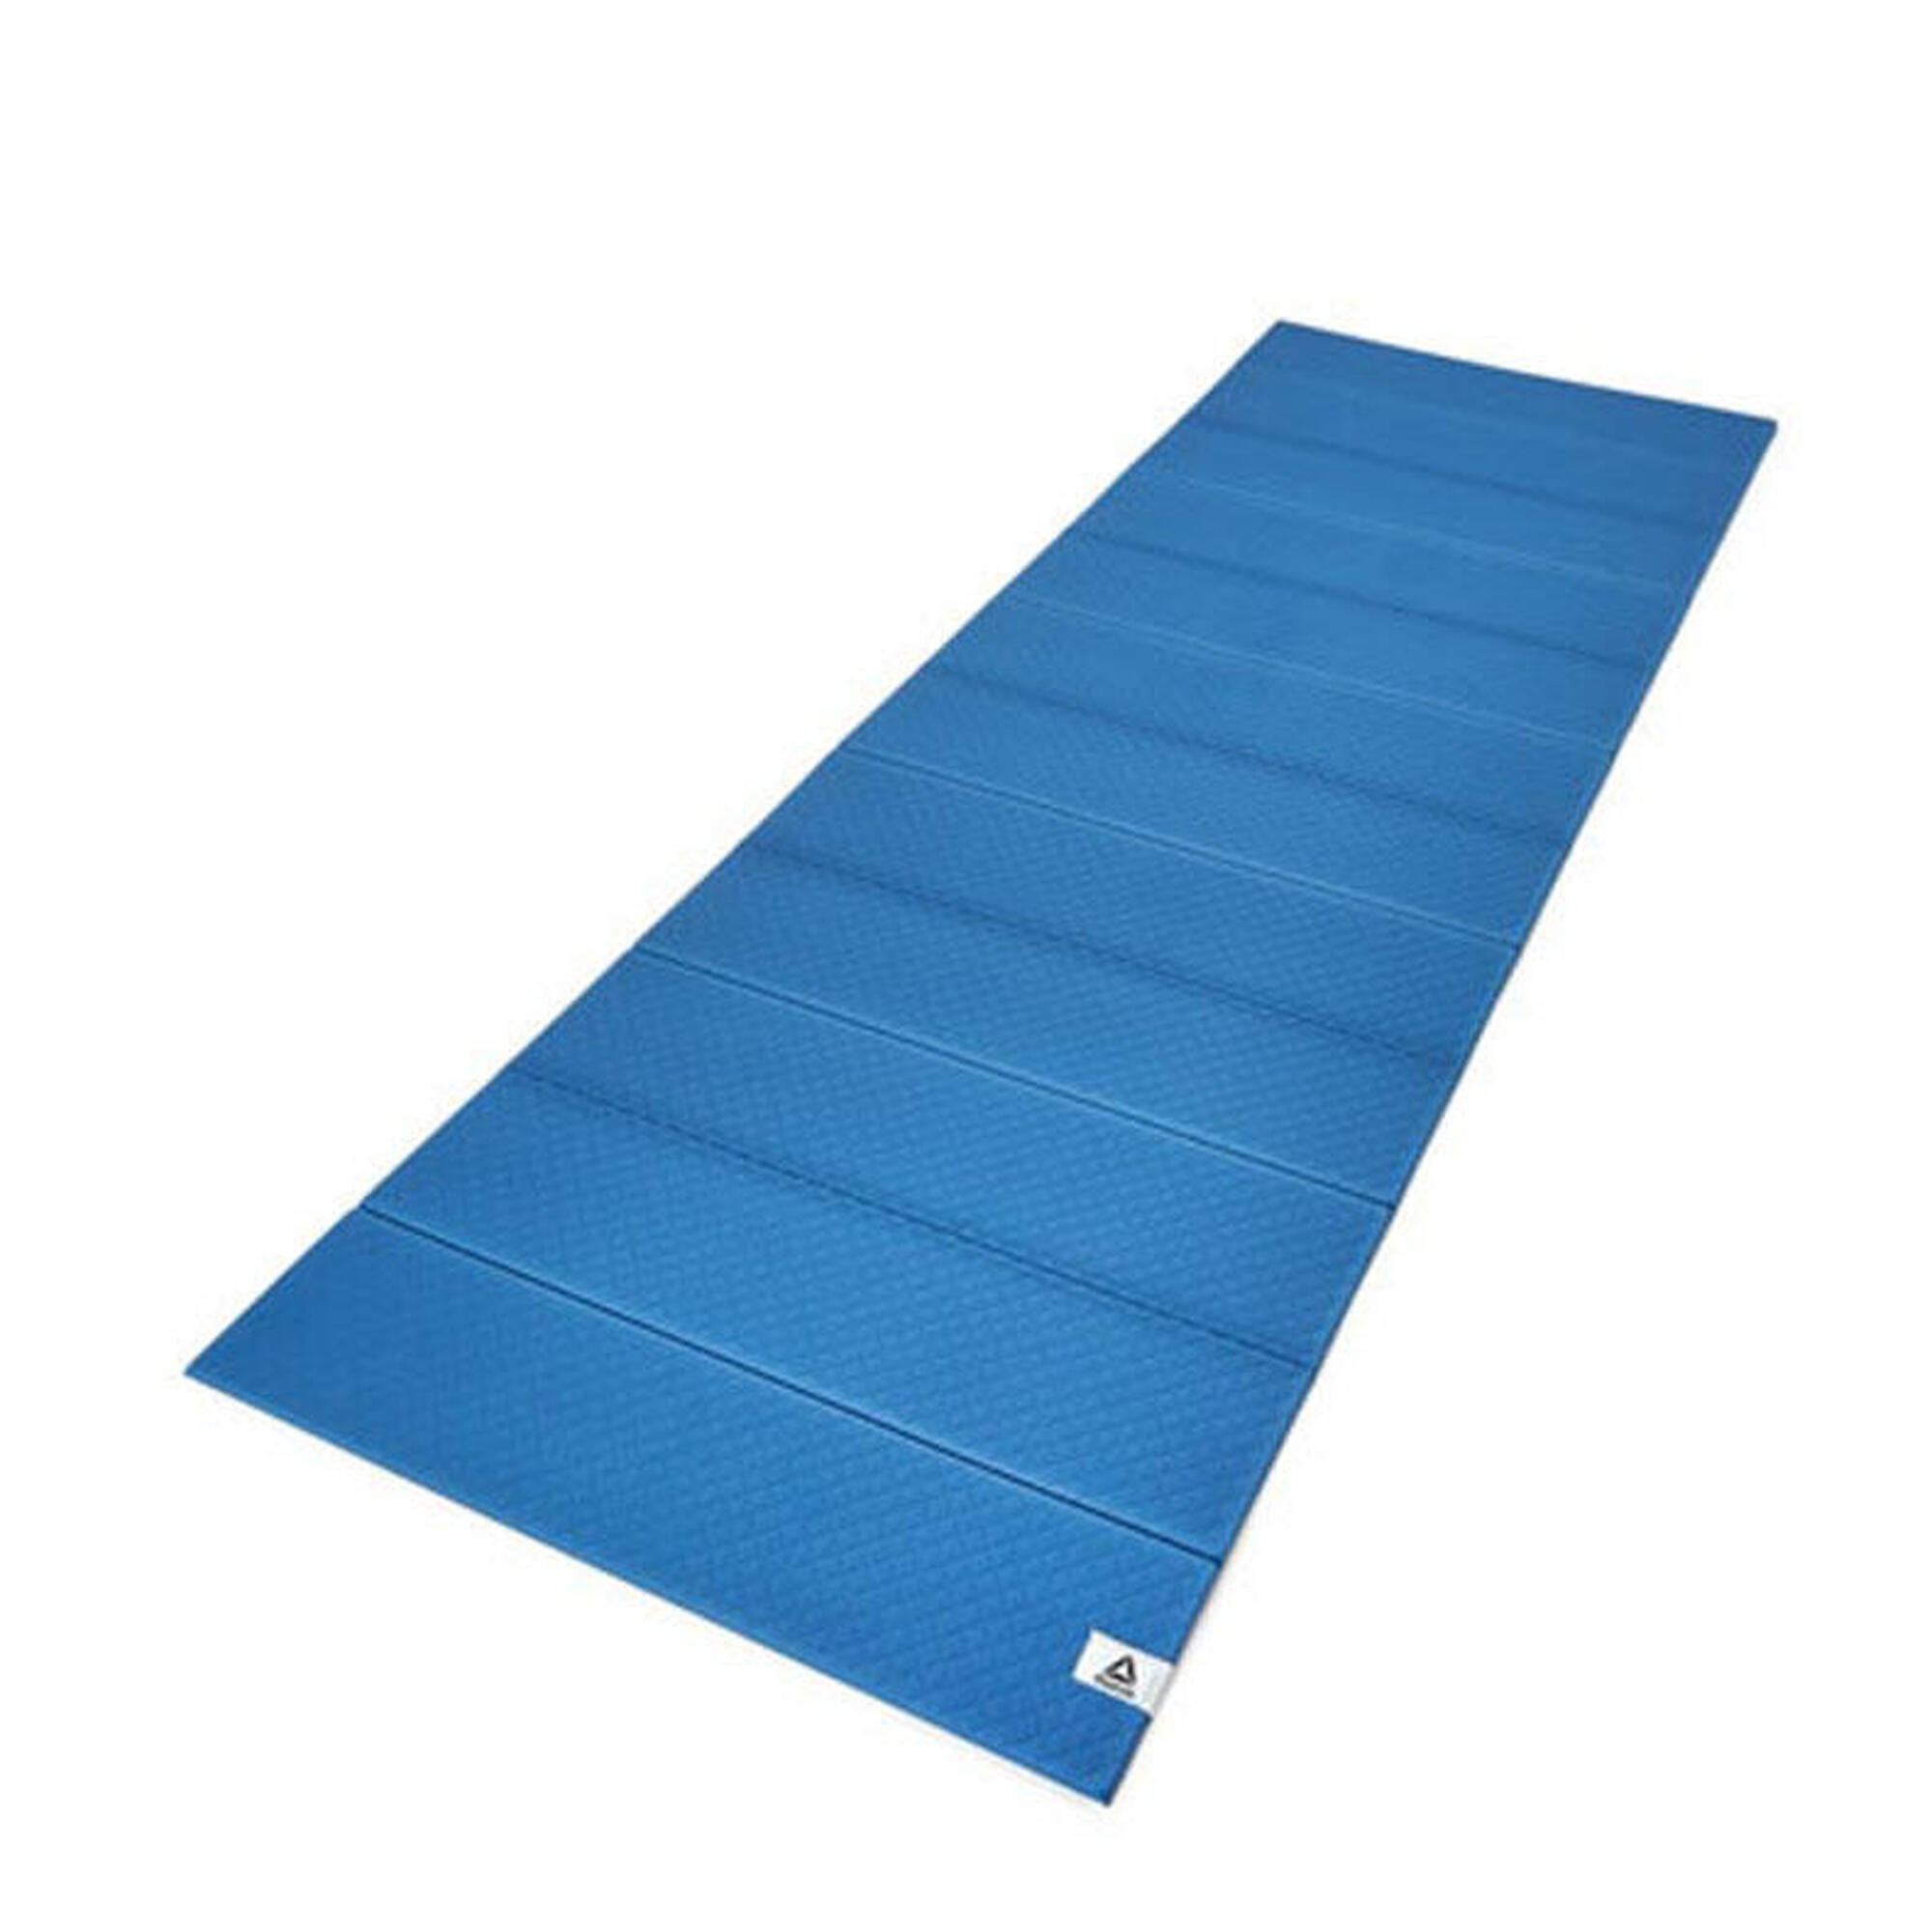 Tapis de Yoga Pliant Reebok - 6mm - Bleu